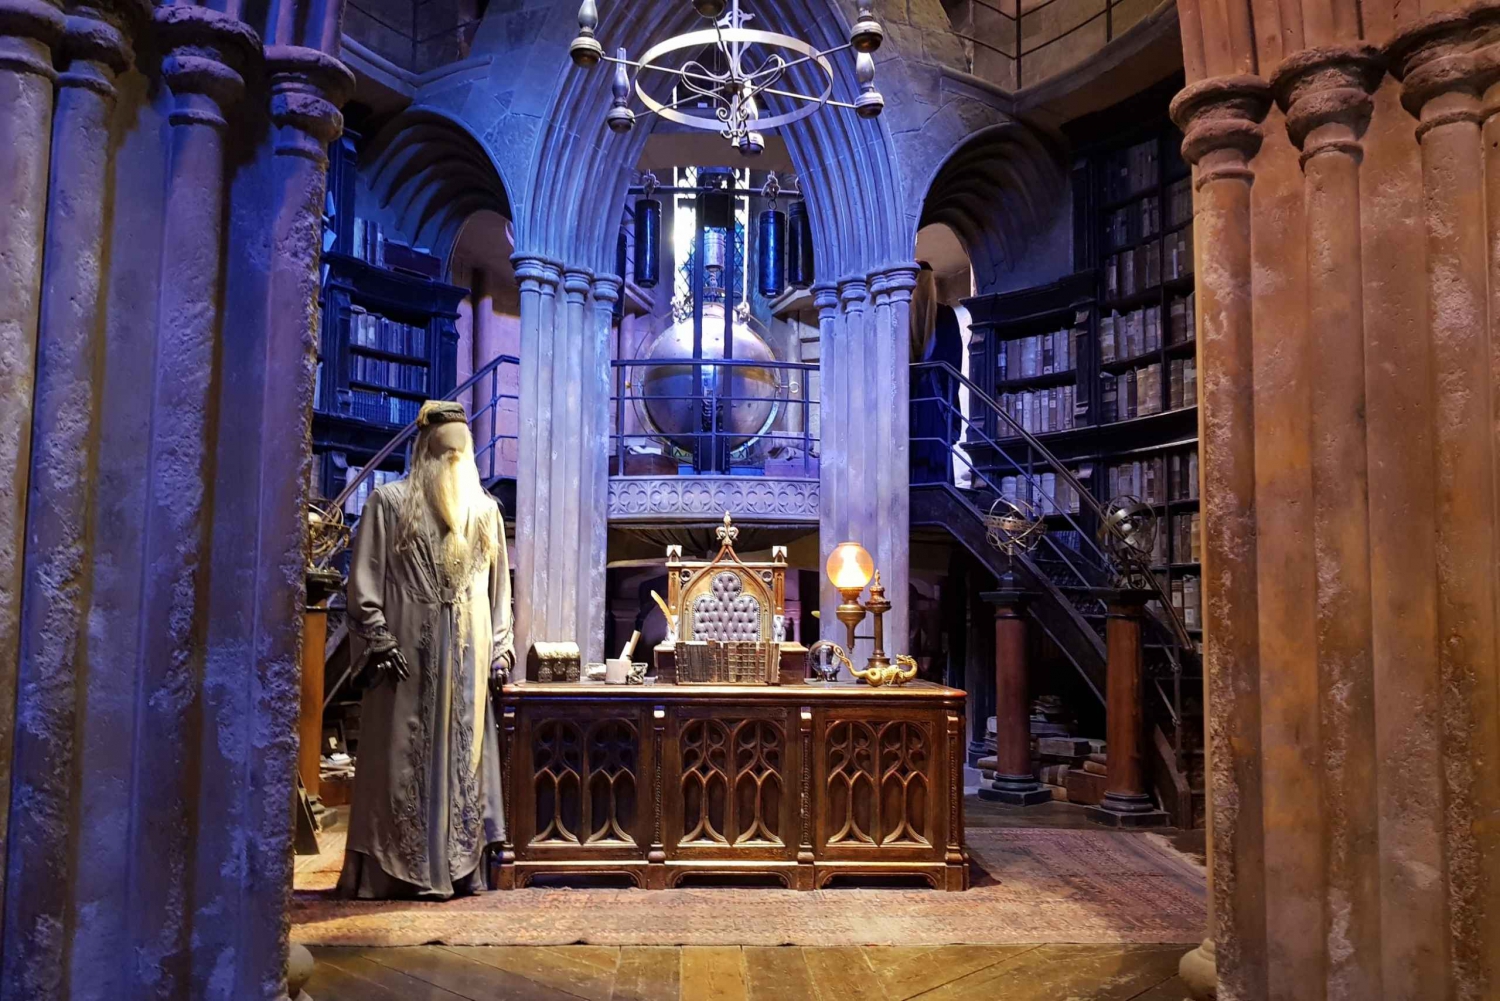 Londyn: Studio i plany zdjęciowe filmów o Harrym Potterze